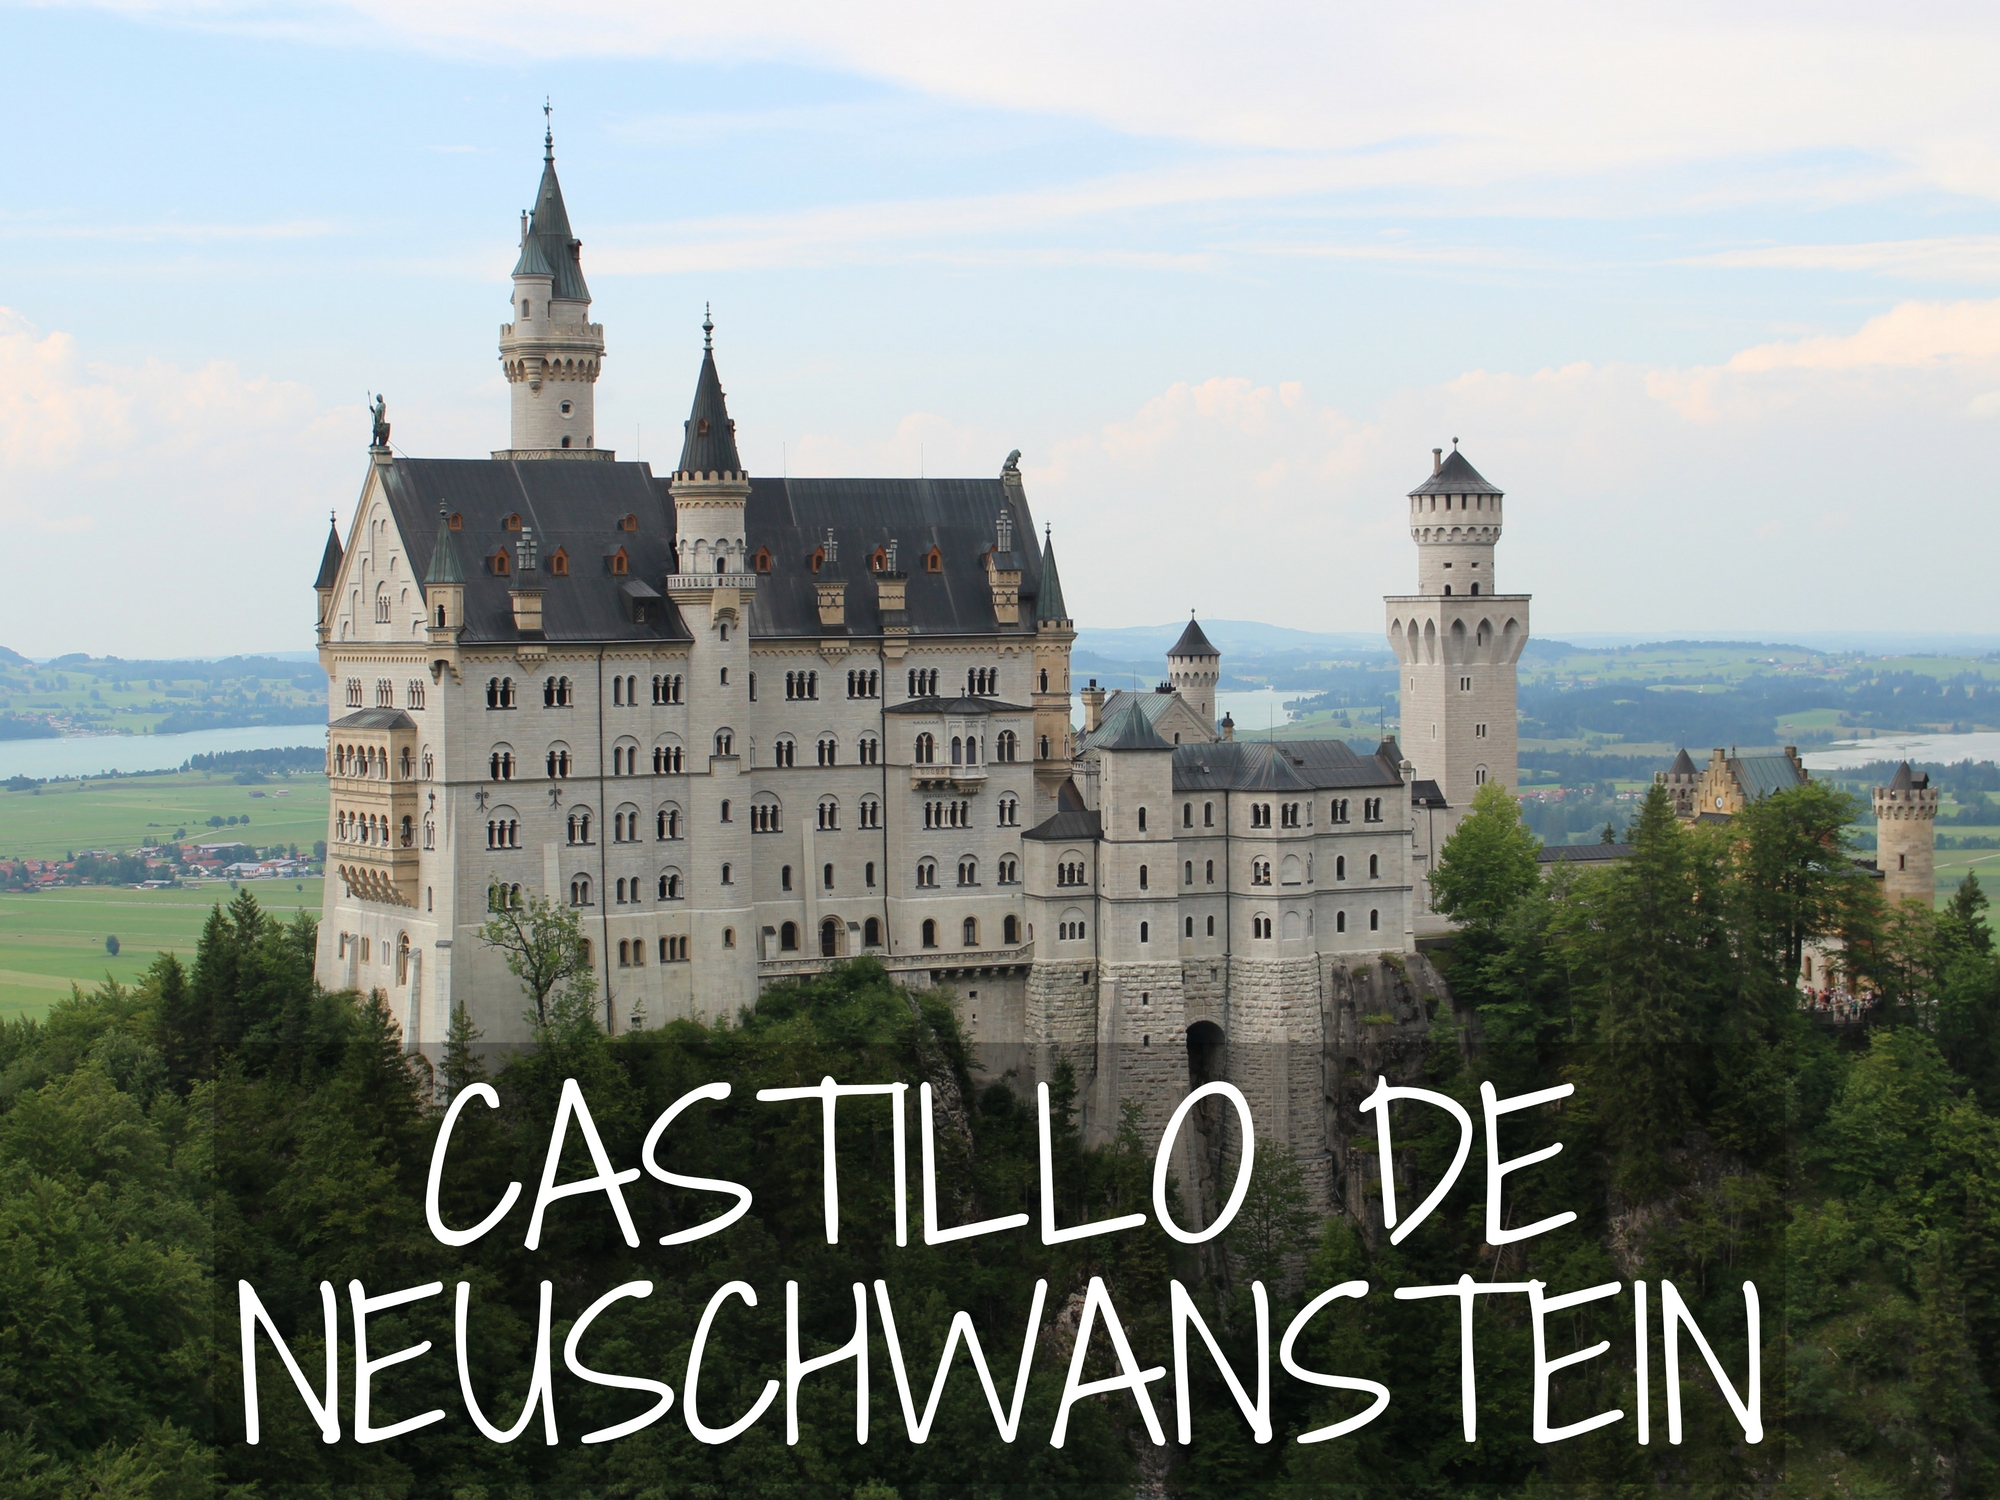 Neuschwanstein: El castillo más visitado de Europa! – Siguiente Destino